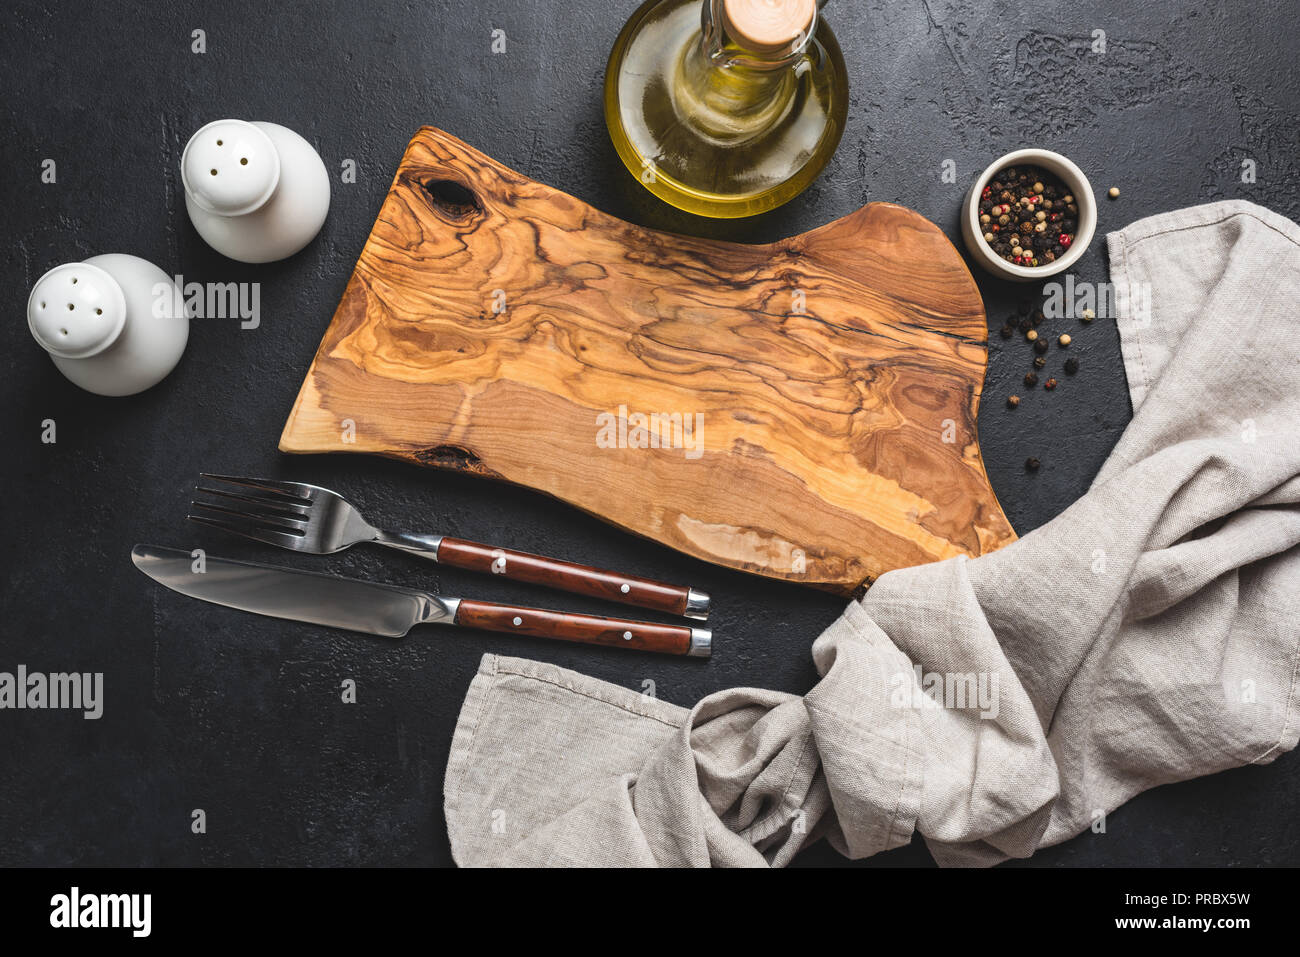 Impostazione tabella nero su sfondo di calcestruzzo. In legno di olivo tagliere, posate, sale e pepe e olio di oliva e biancheria da cucina prodotti tessili Foto Stock